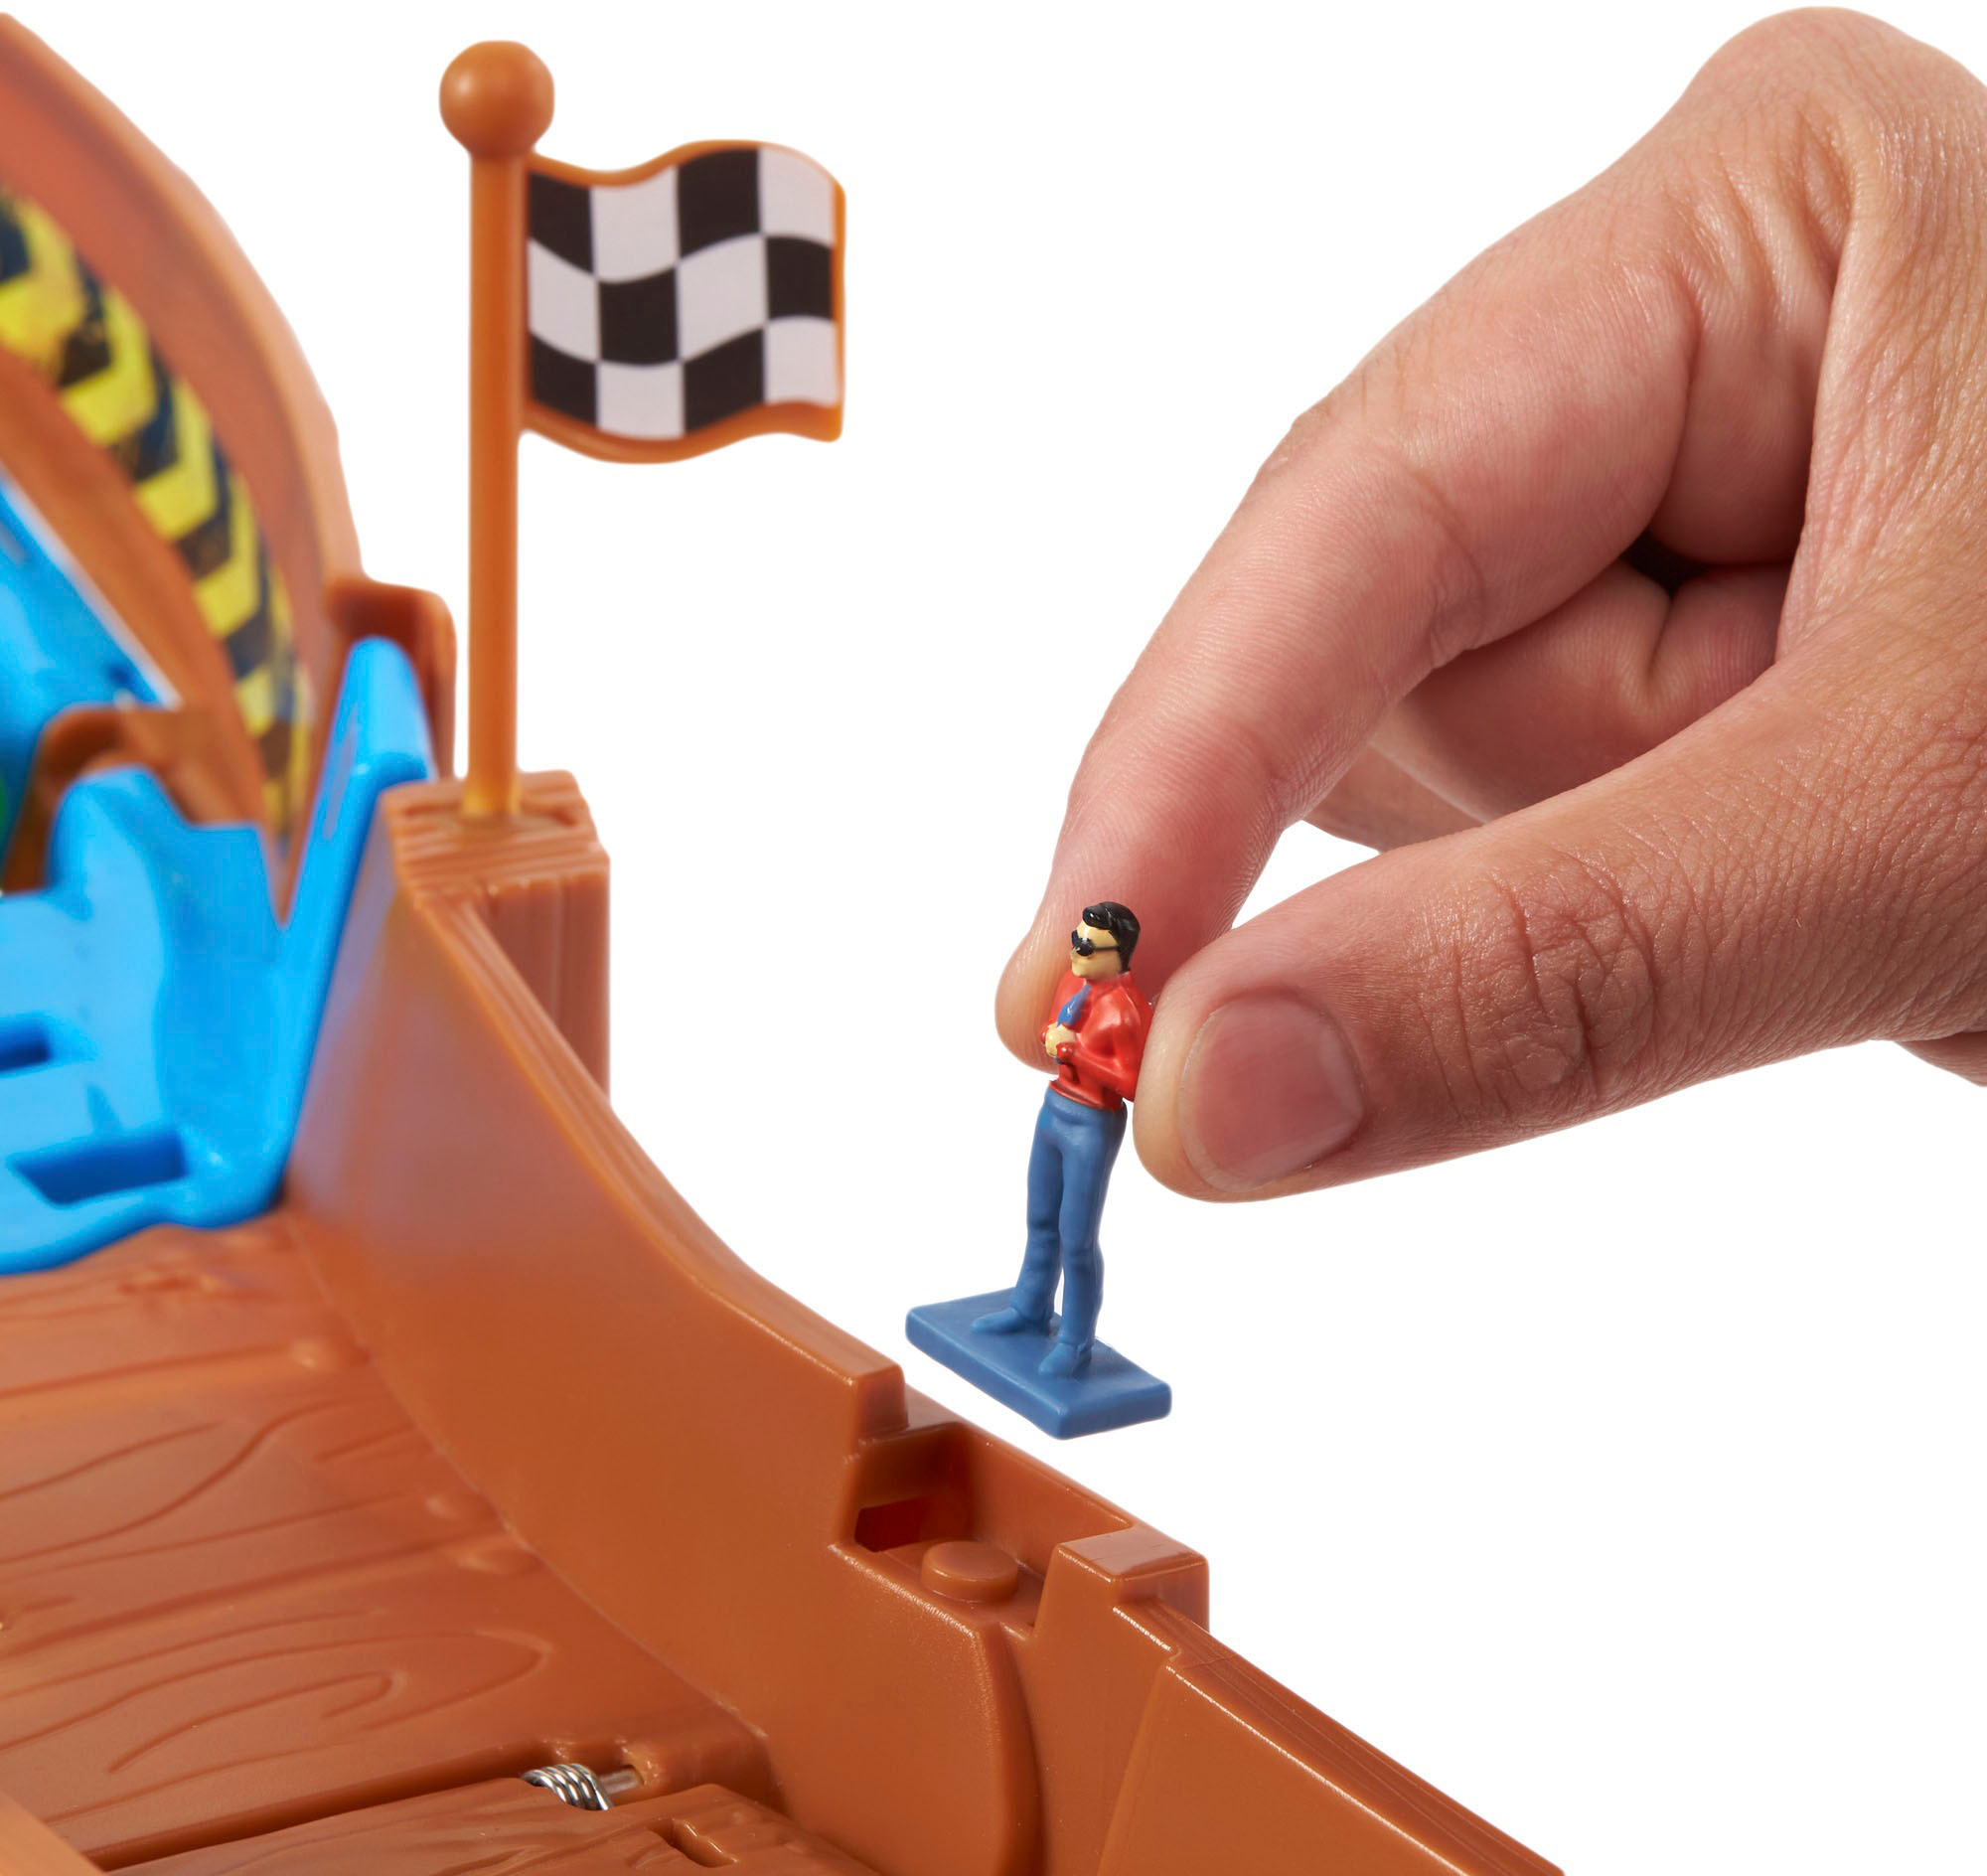 Hot Wheels Monster Trucks Wreckin' Raceway Playset  - Best Buy